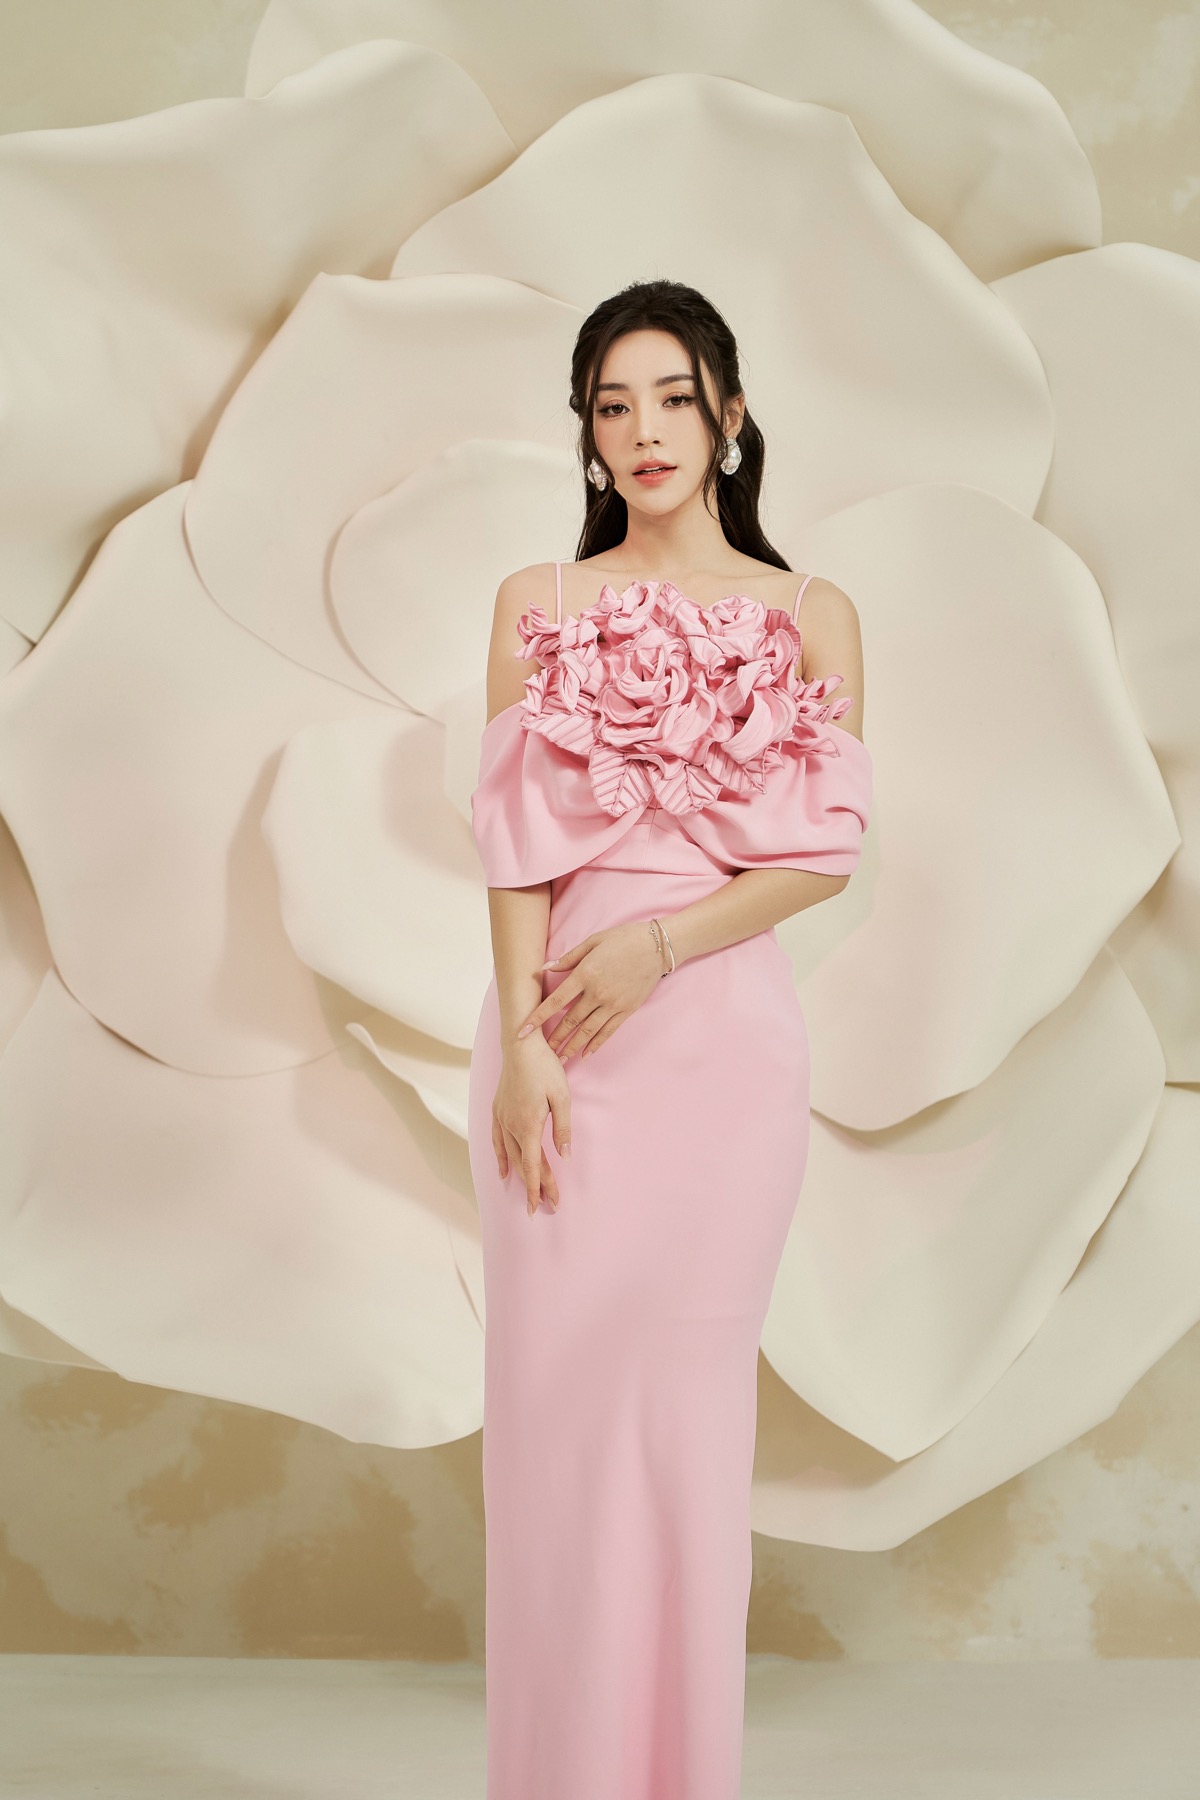 Vẫn chọn gam màu hồng pastel để xuống phố mùa xuân, tuy nhiên thiết kế váy 2 dây kèm họa tiết hoa 3D đính kết tạo điểm nhấn cho thiết kế góp phần ''nâng tầm'' diện mạo cho nữ diễn viên.